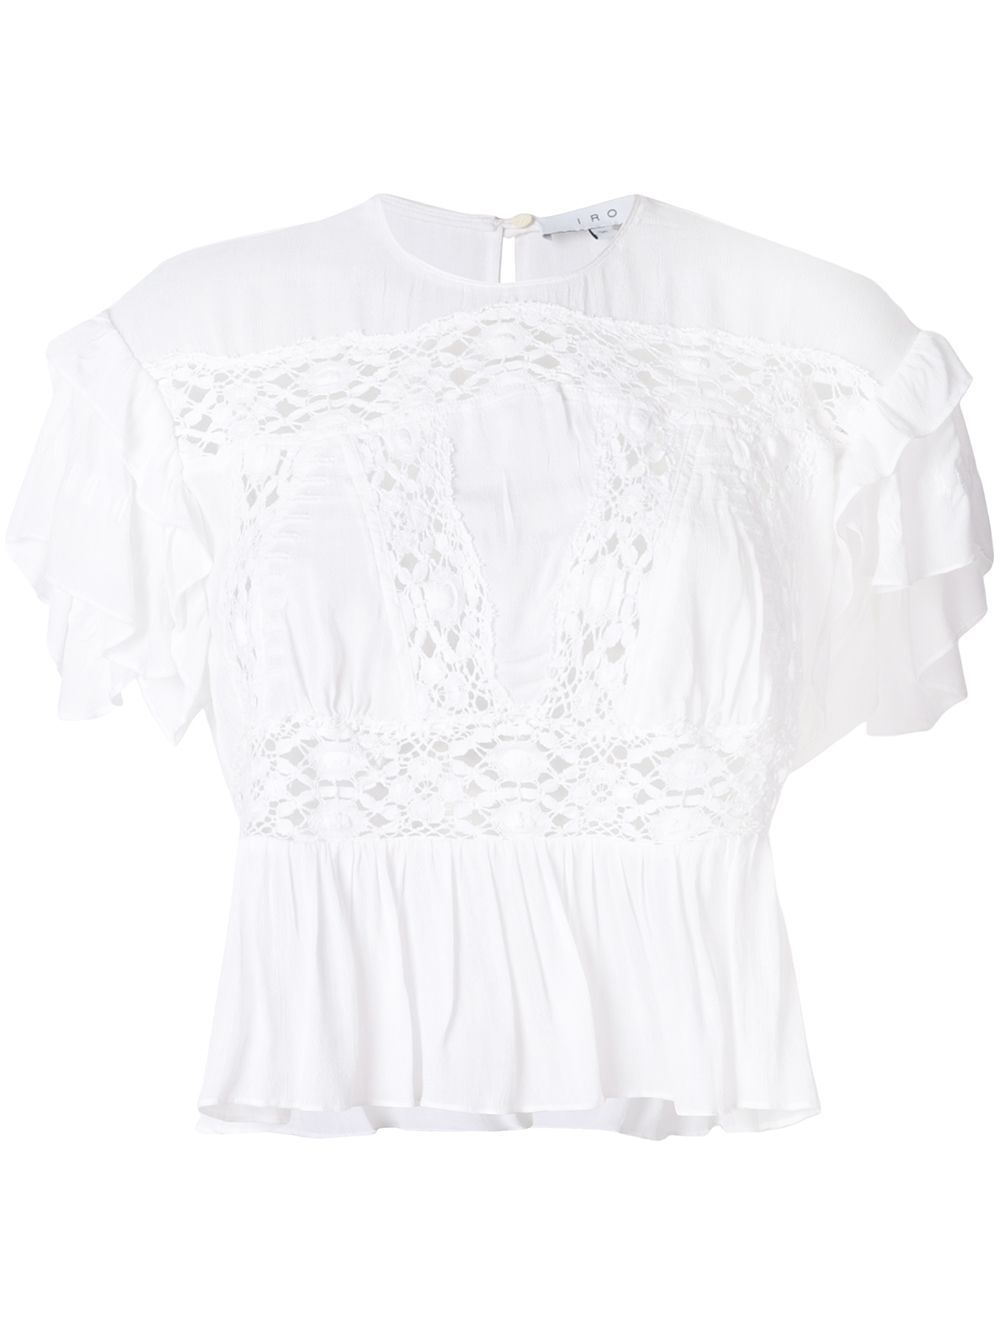 Iro crocket lace insert blouse - Whi01 White | FarFetch US